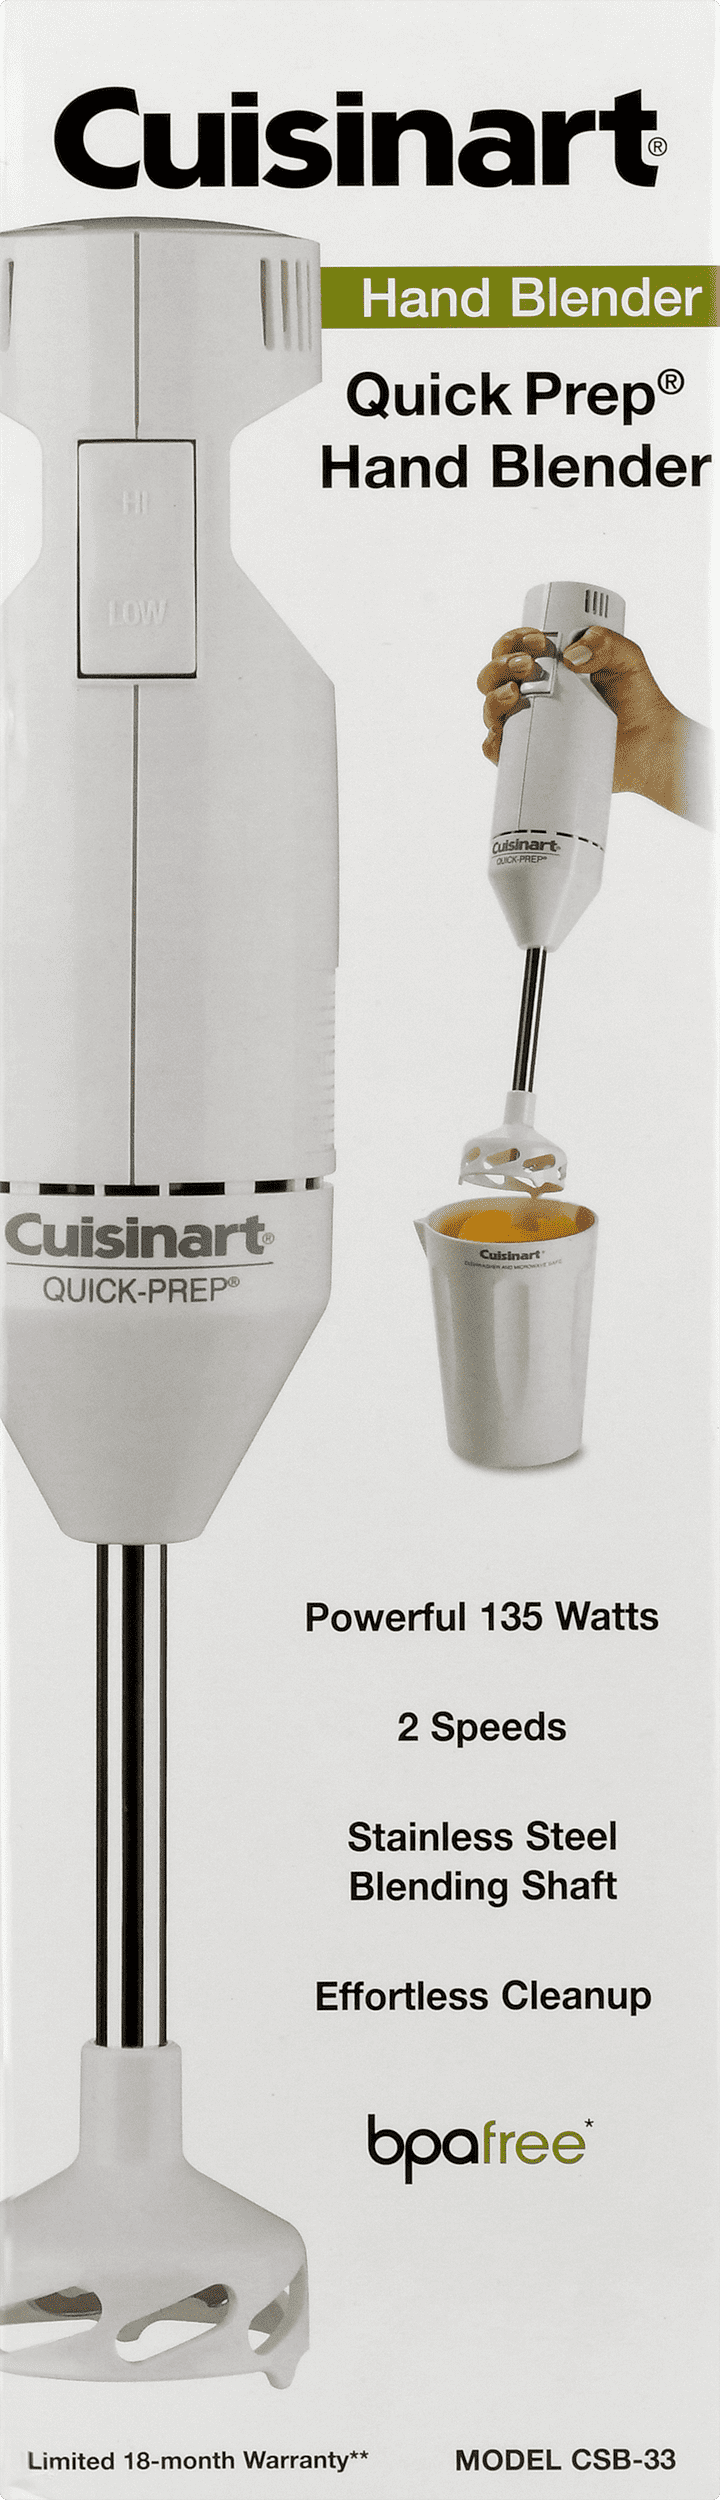 Cuisinart CHB-60TG Quick-Prep 2-Speed Hand Blender in White New